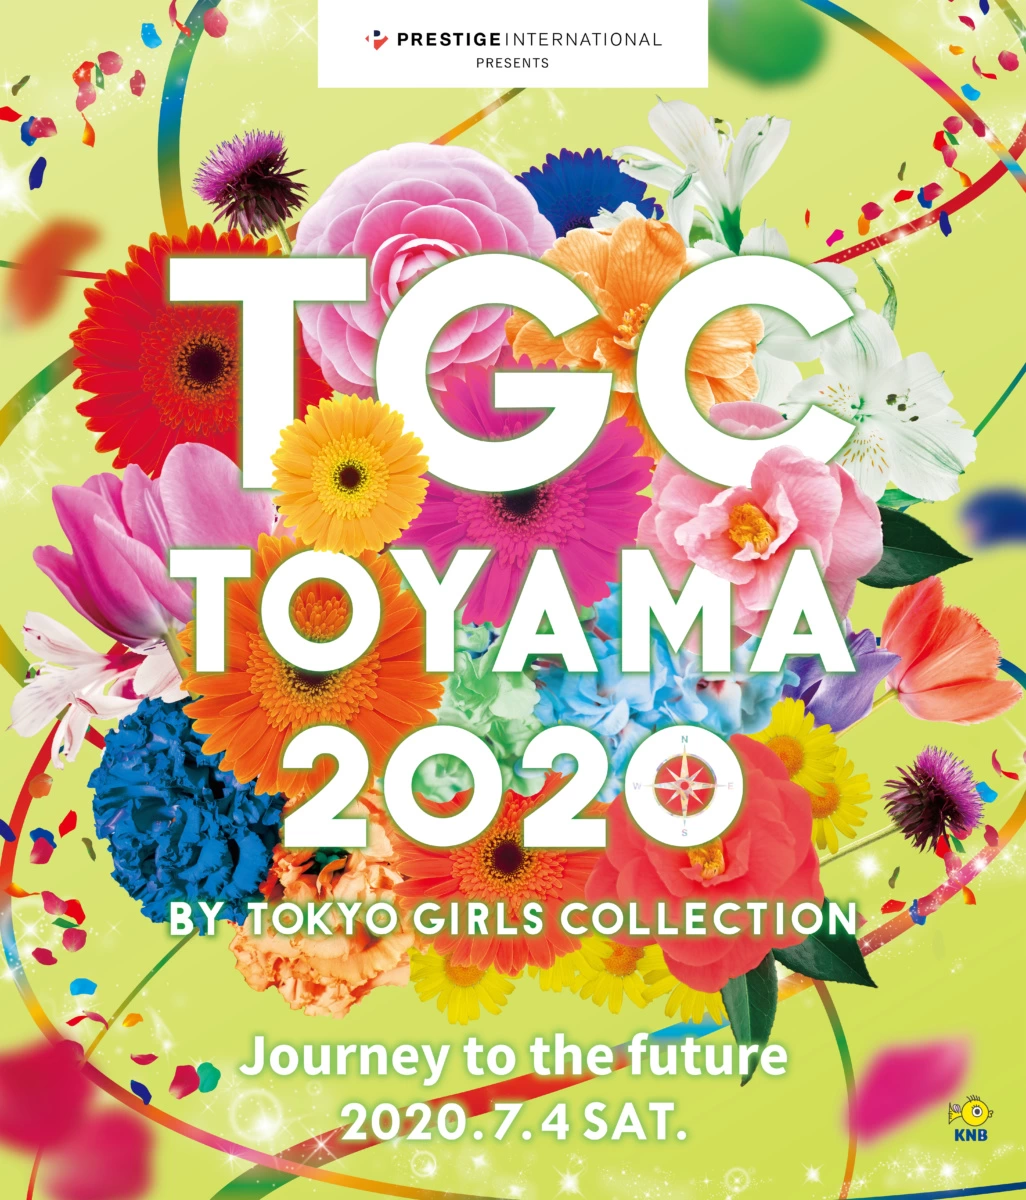 プレステージ・インターナショナル presents TGC TOYAMA 2020 by TOKYO GIRLS COLLECTION 